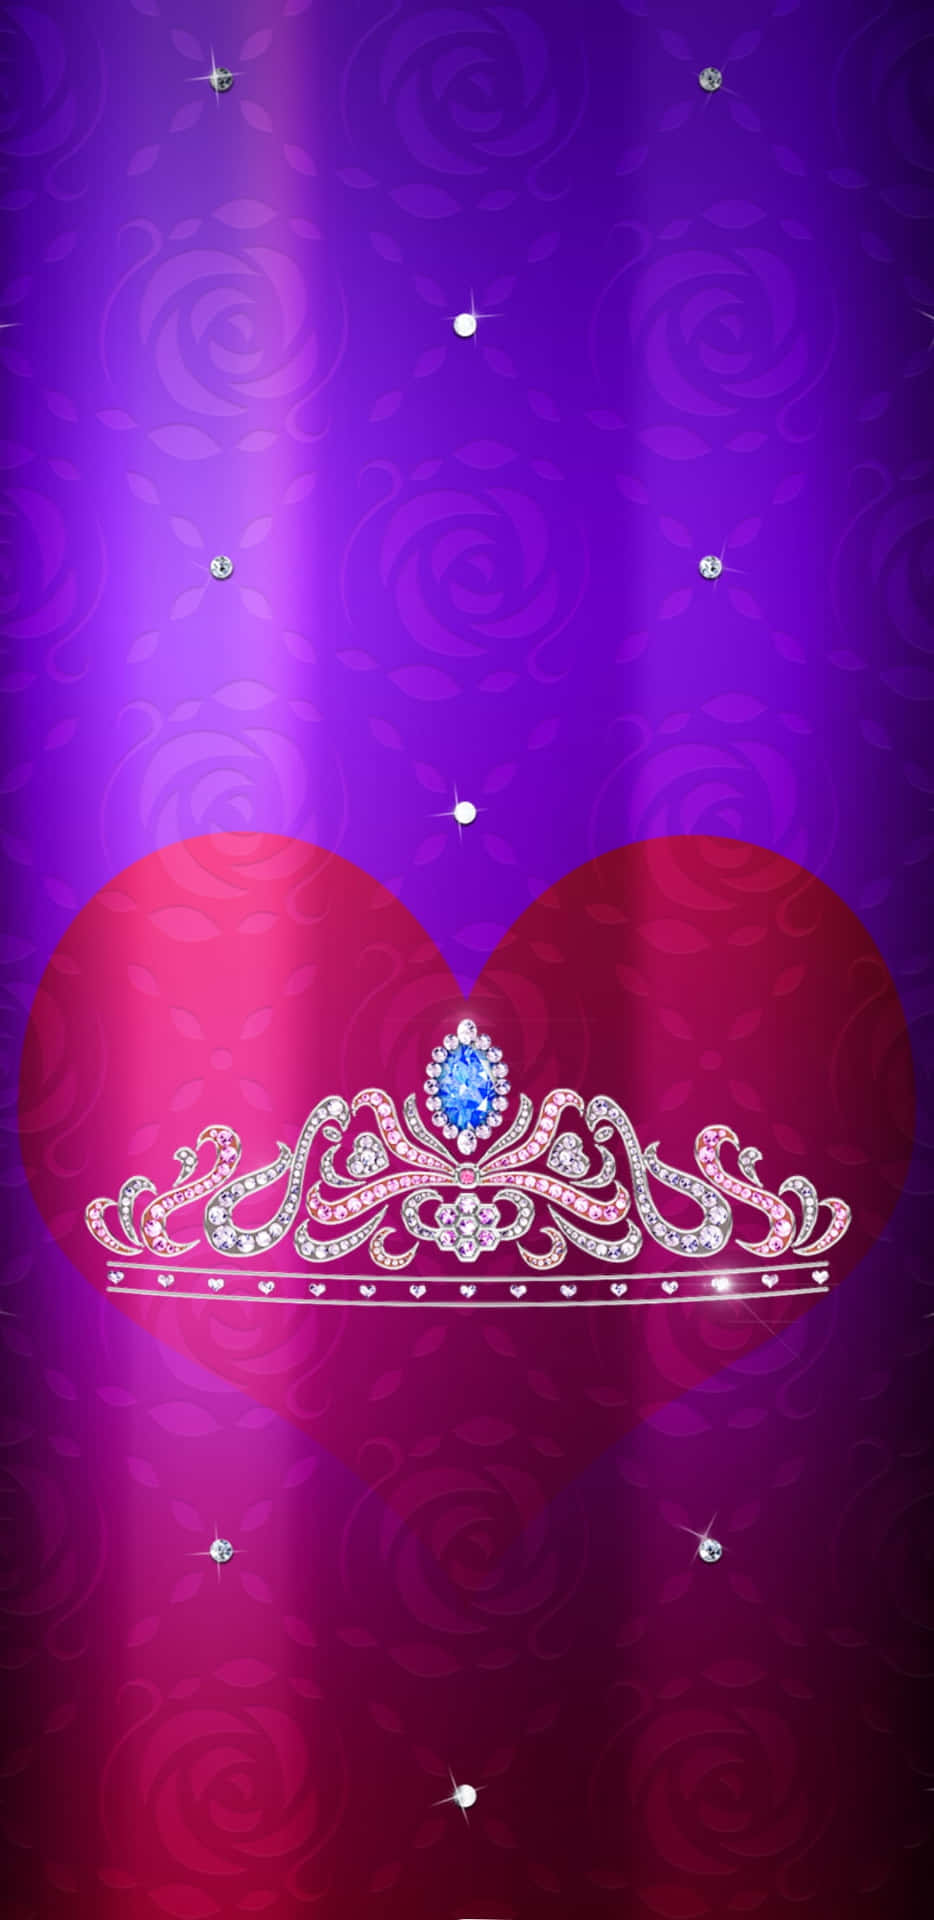 Seiköniglich Und Majestätisch Mit Dieser Wunderschönen Prinzessinnenkrone. Wallpaper